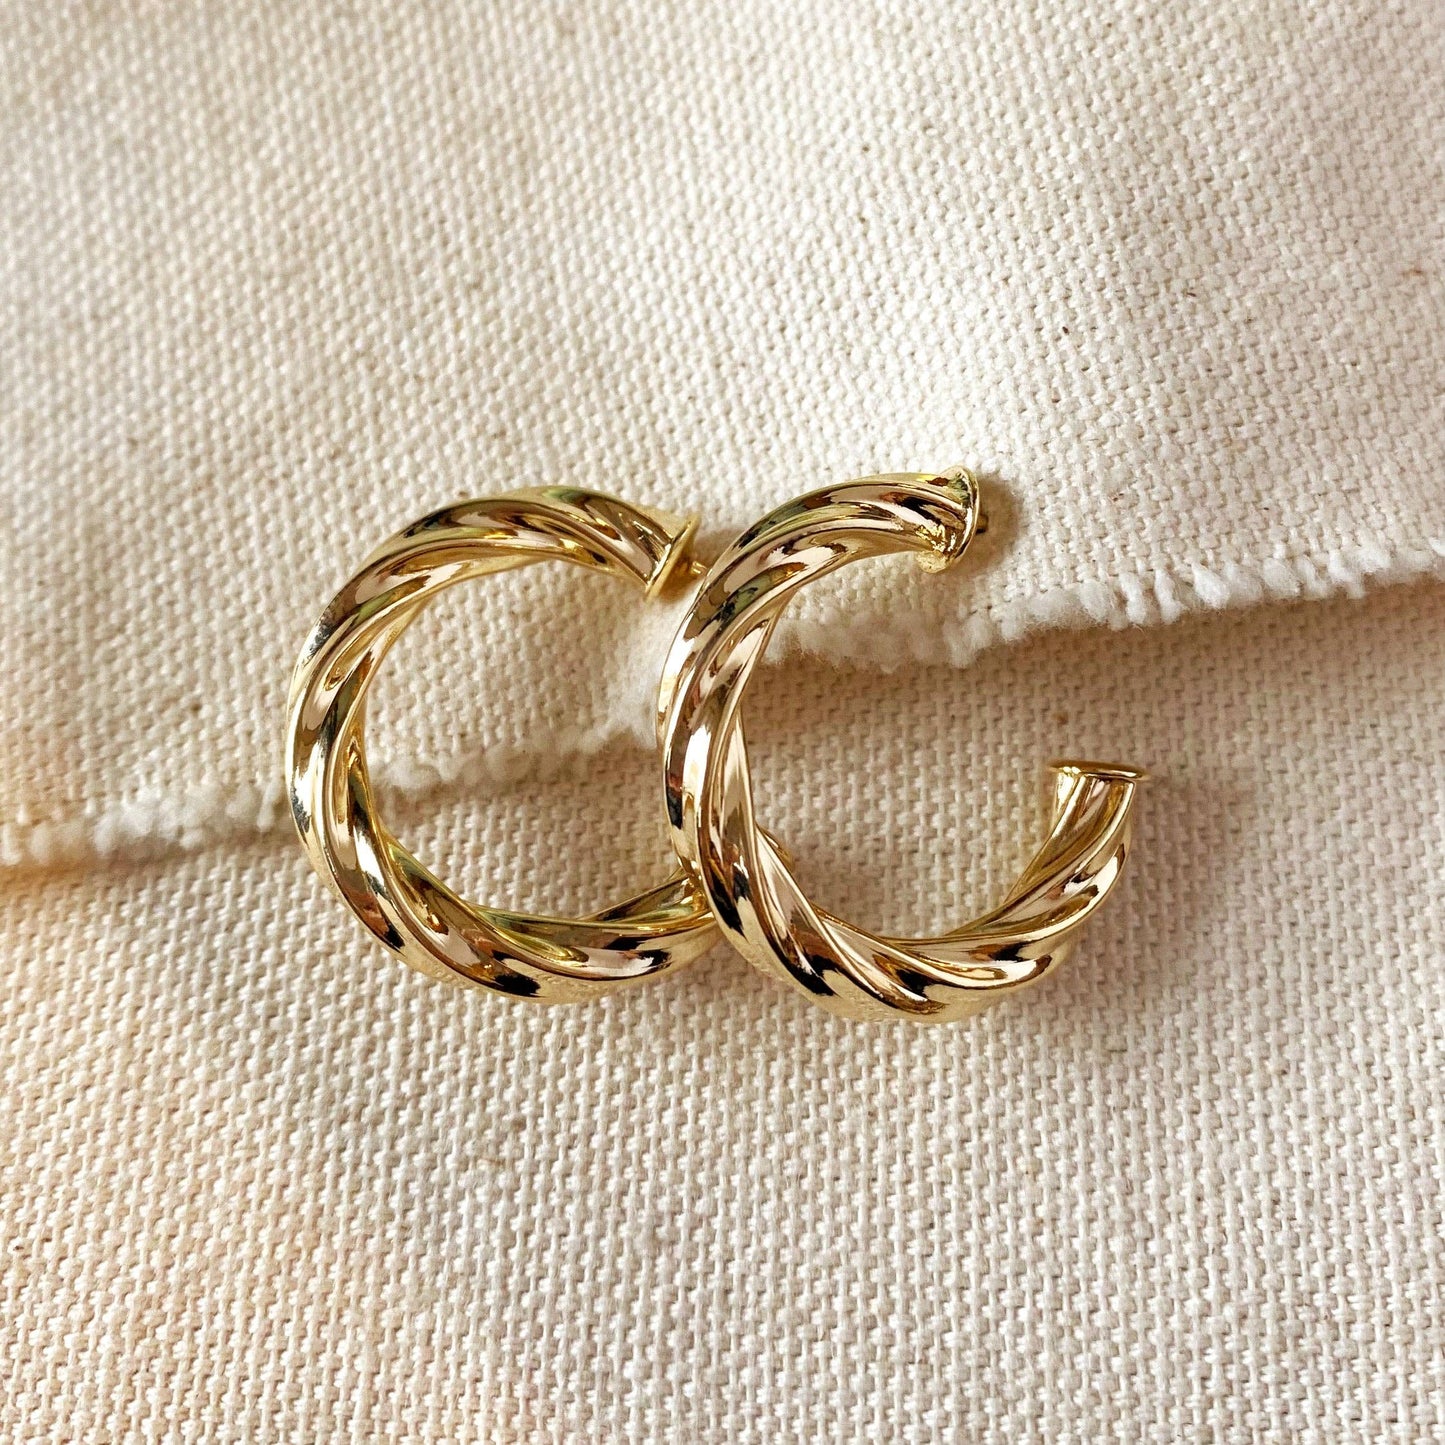 18k Gold Filled Twisted Half-Hoop Earrings